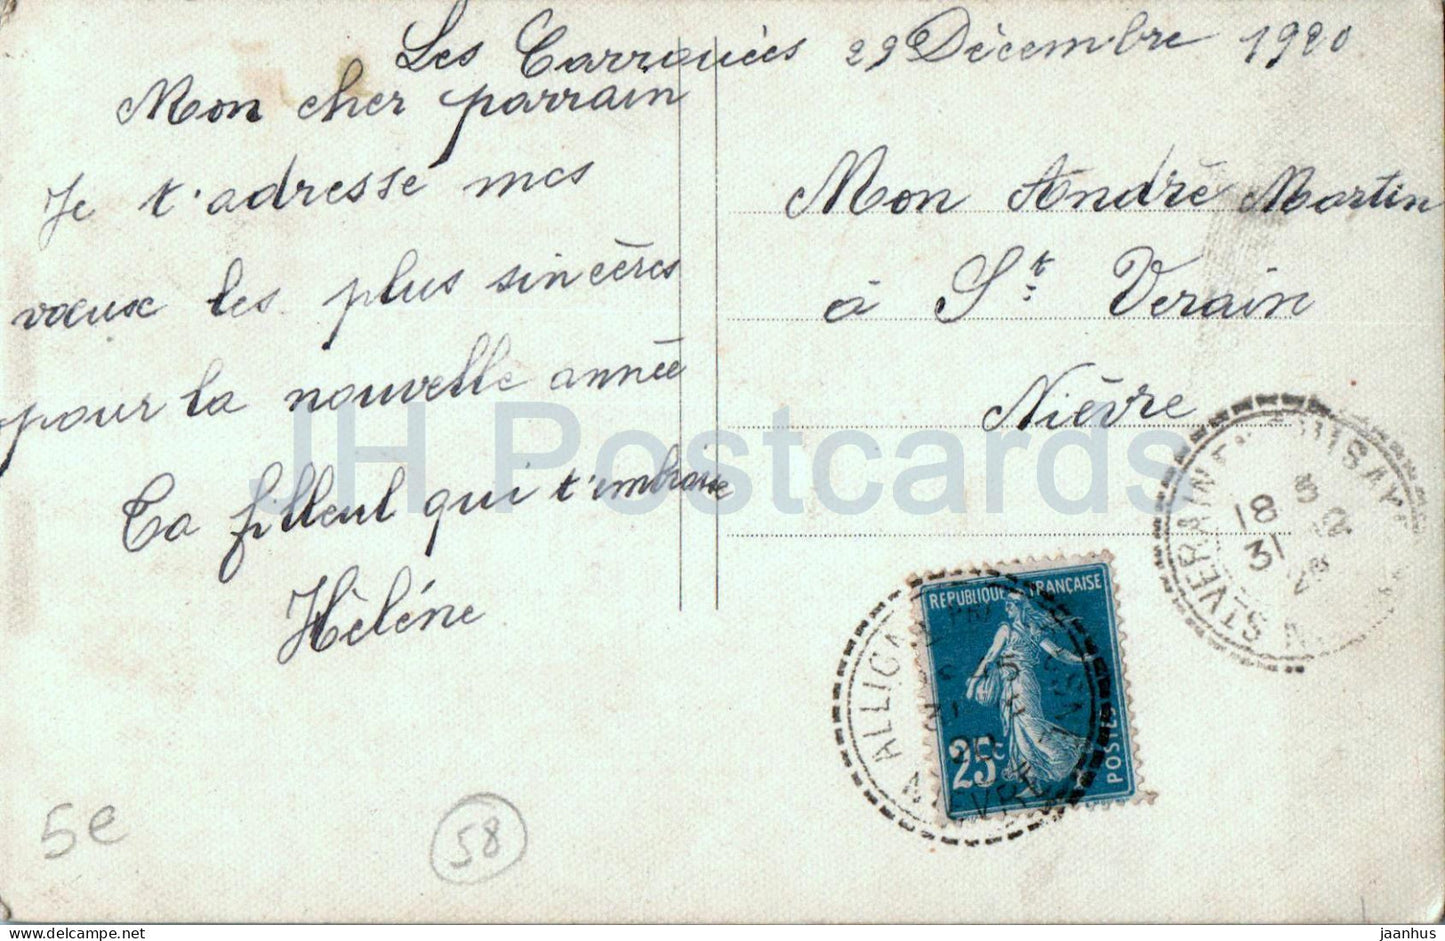 Carte de voeux du Nouvel An - Bonne Annee - L'Edelweiss Porte Bonheur - carte postale ancienne - 1920 - France - utilisé 